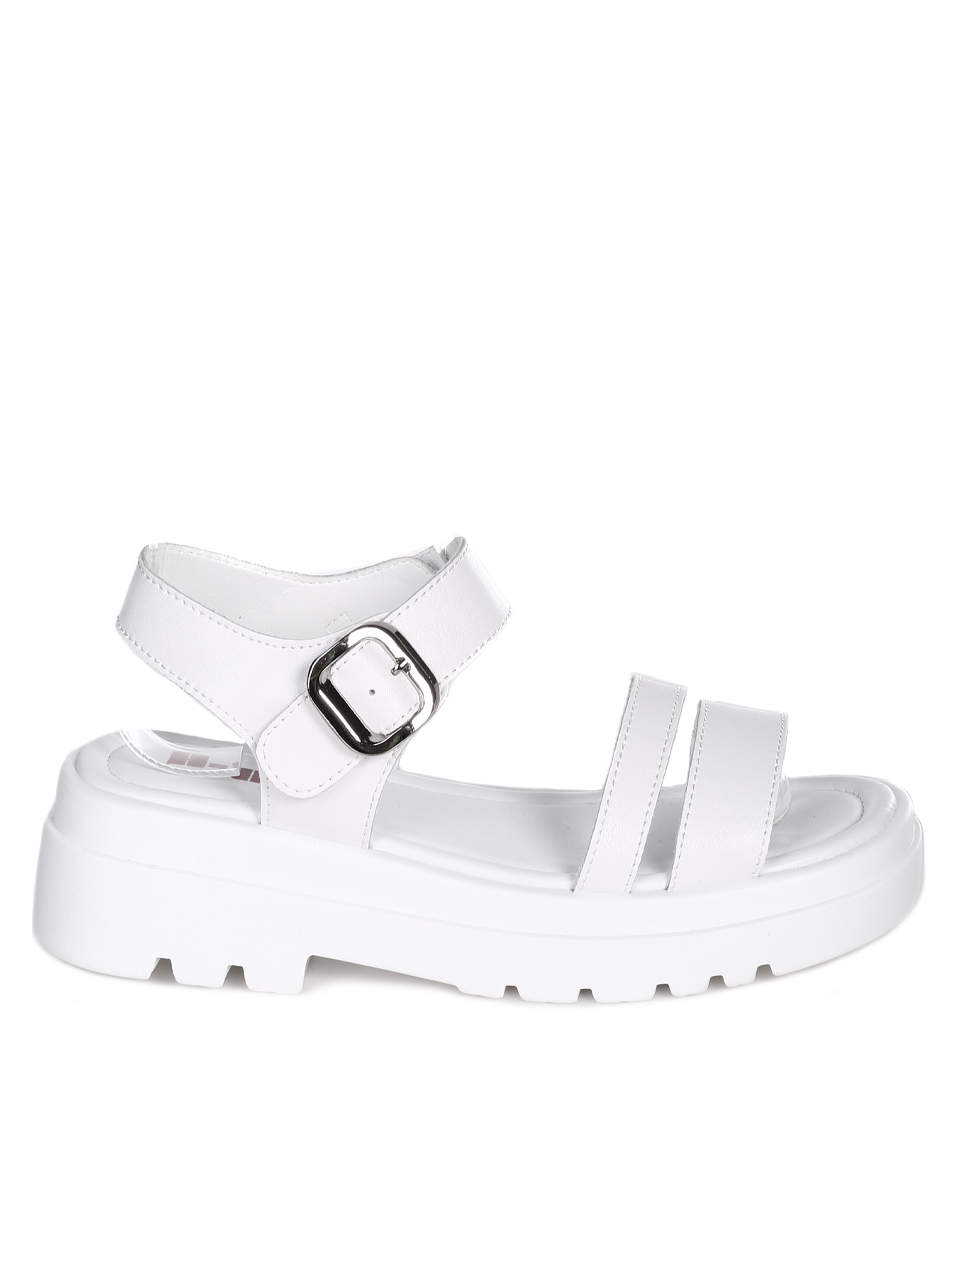 Ежедневни дамски сандали на платформа от естествена кожа 4AF-23143 white